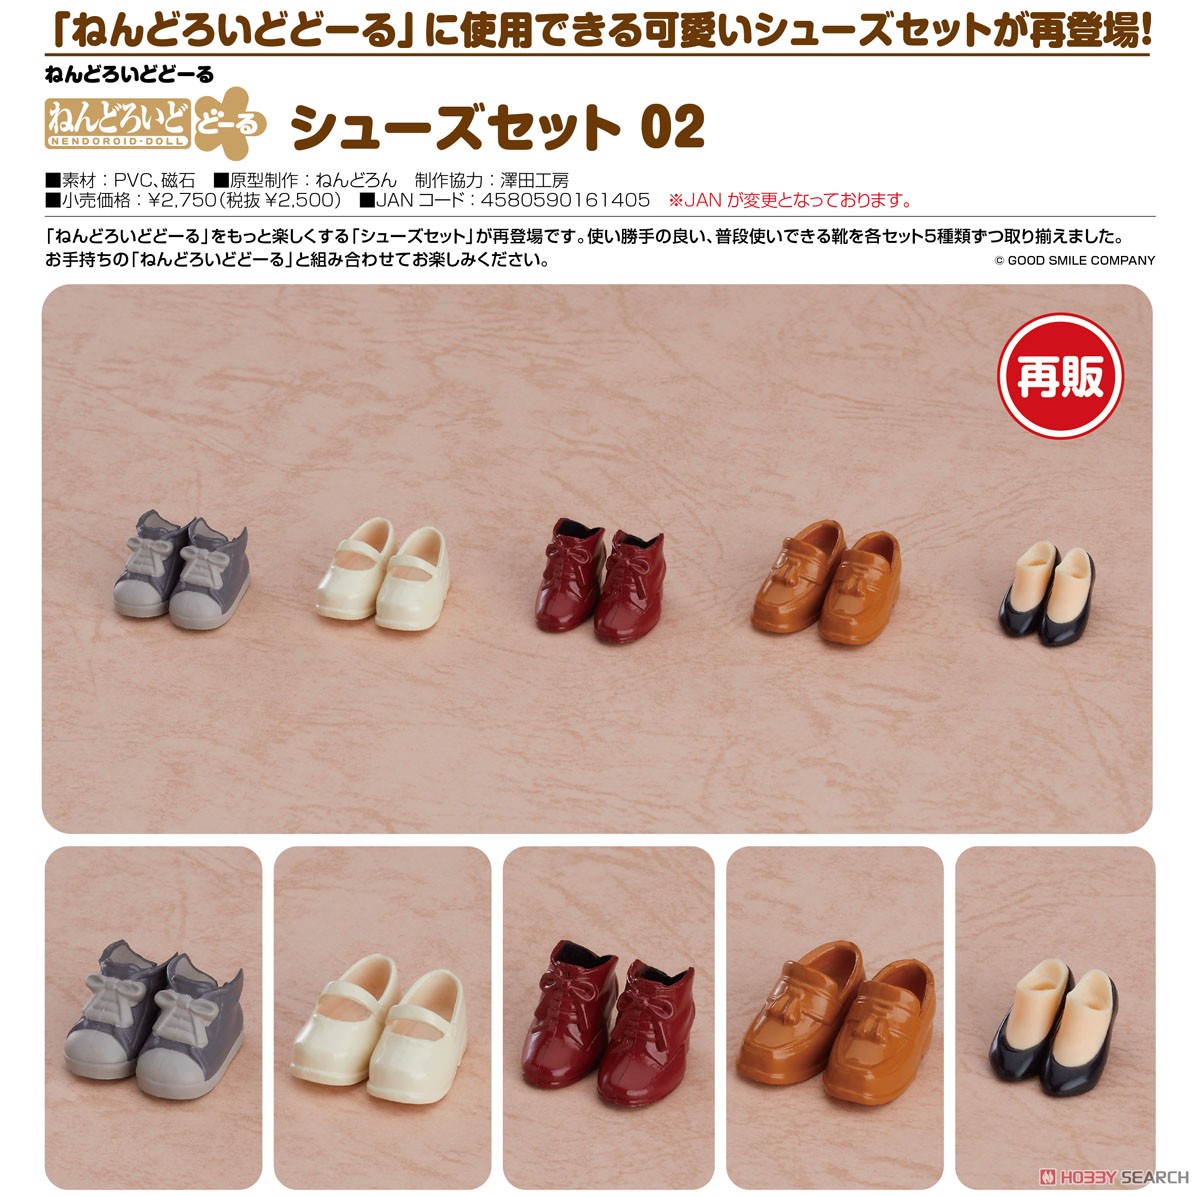 Nendoroid Doll: Shoes Set 02 (PVC Figure) Item picture3